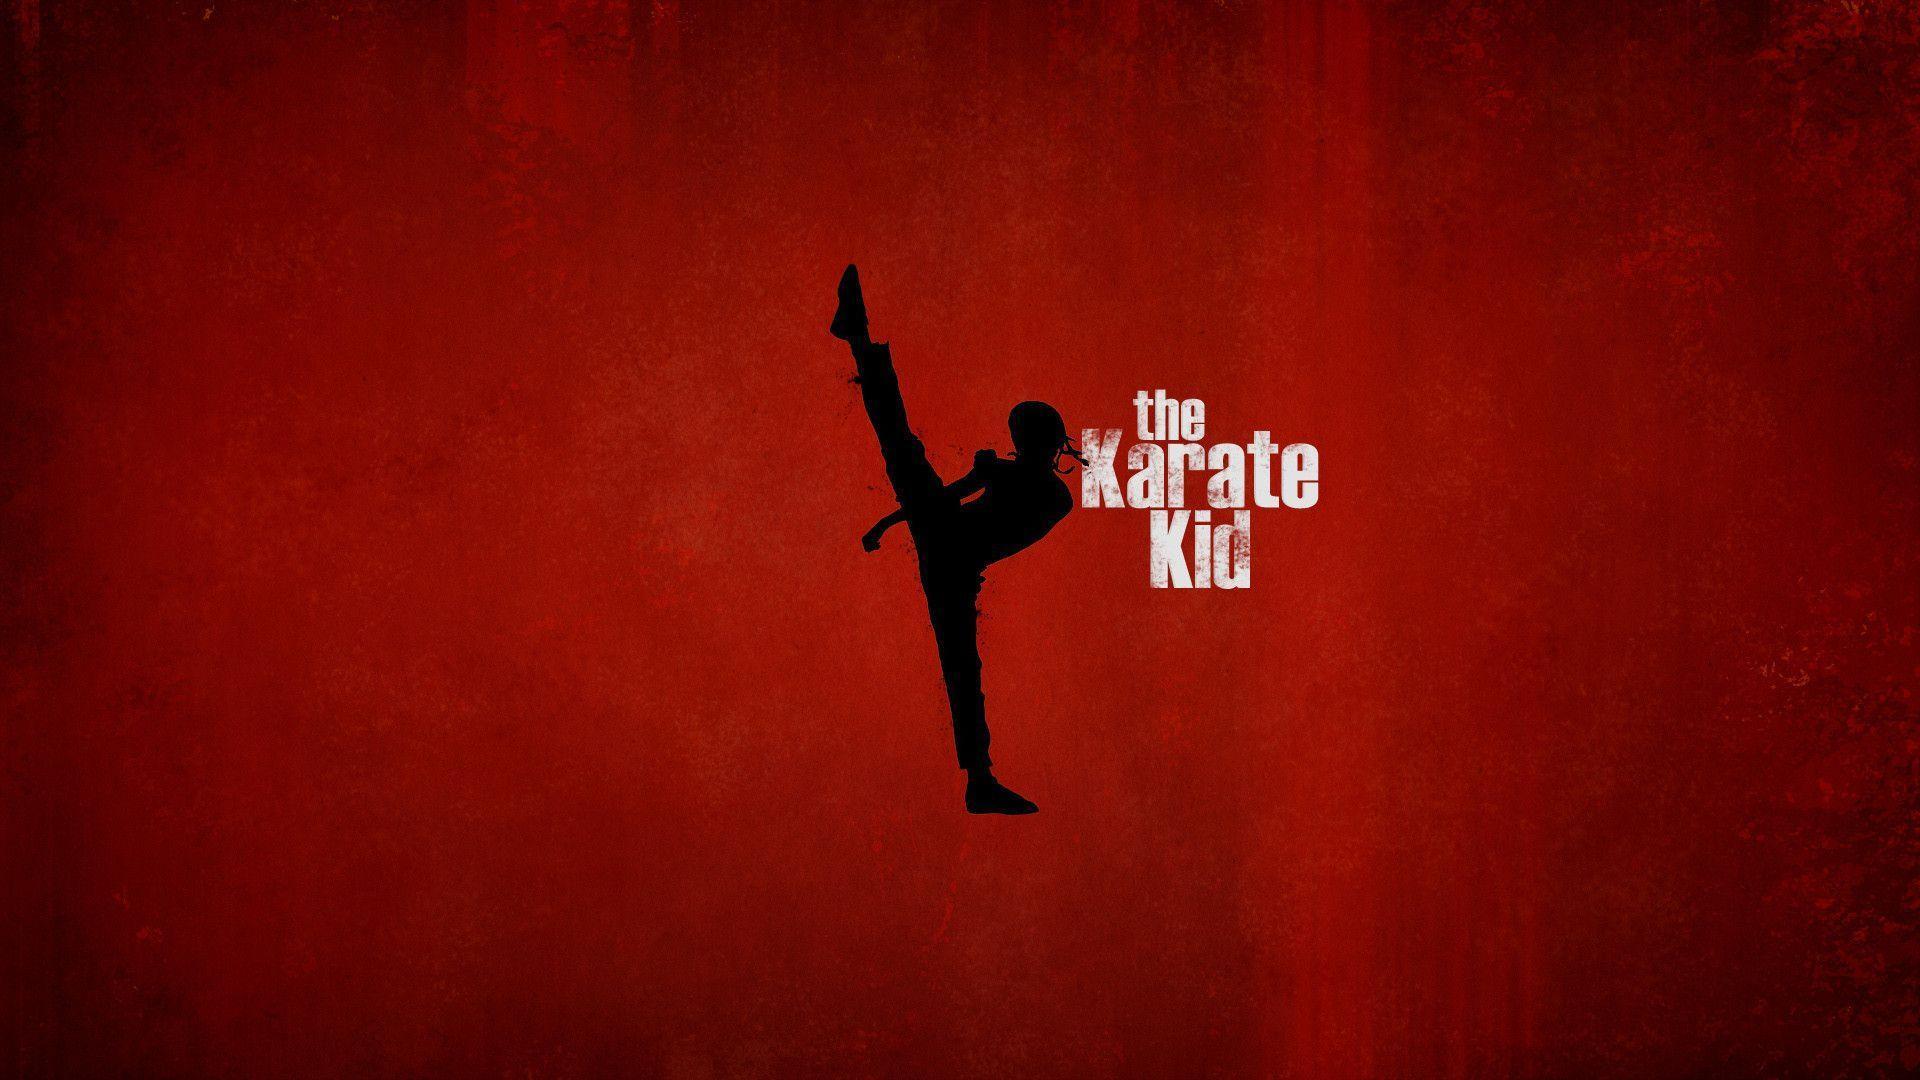 Karate Kid Wallpapers